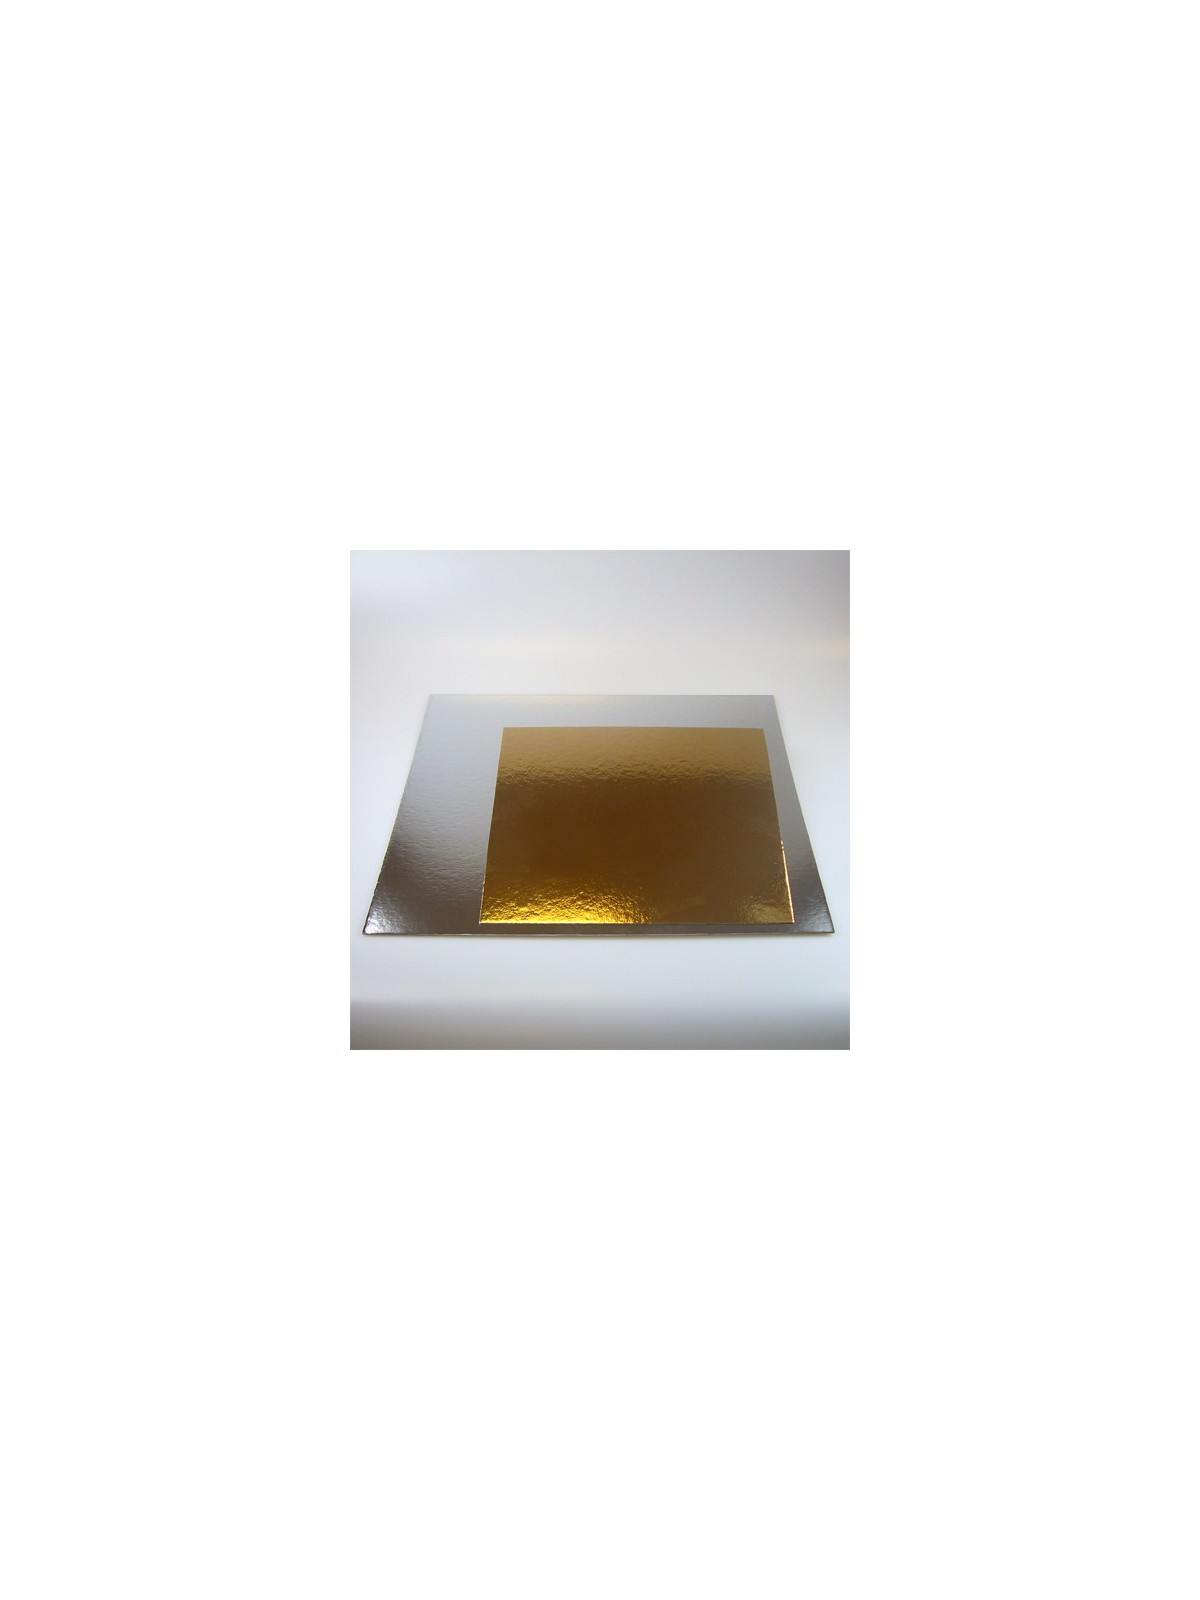 Tortenplatten in gold / silber, 25cm,